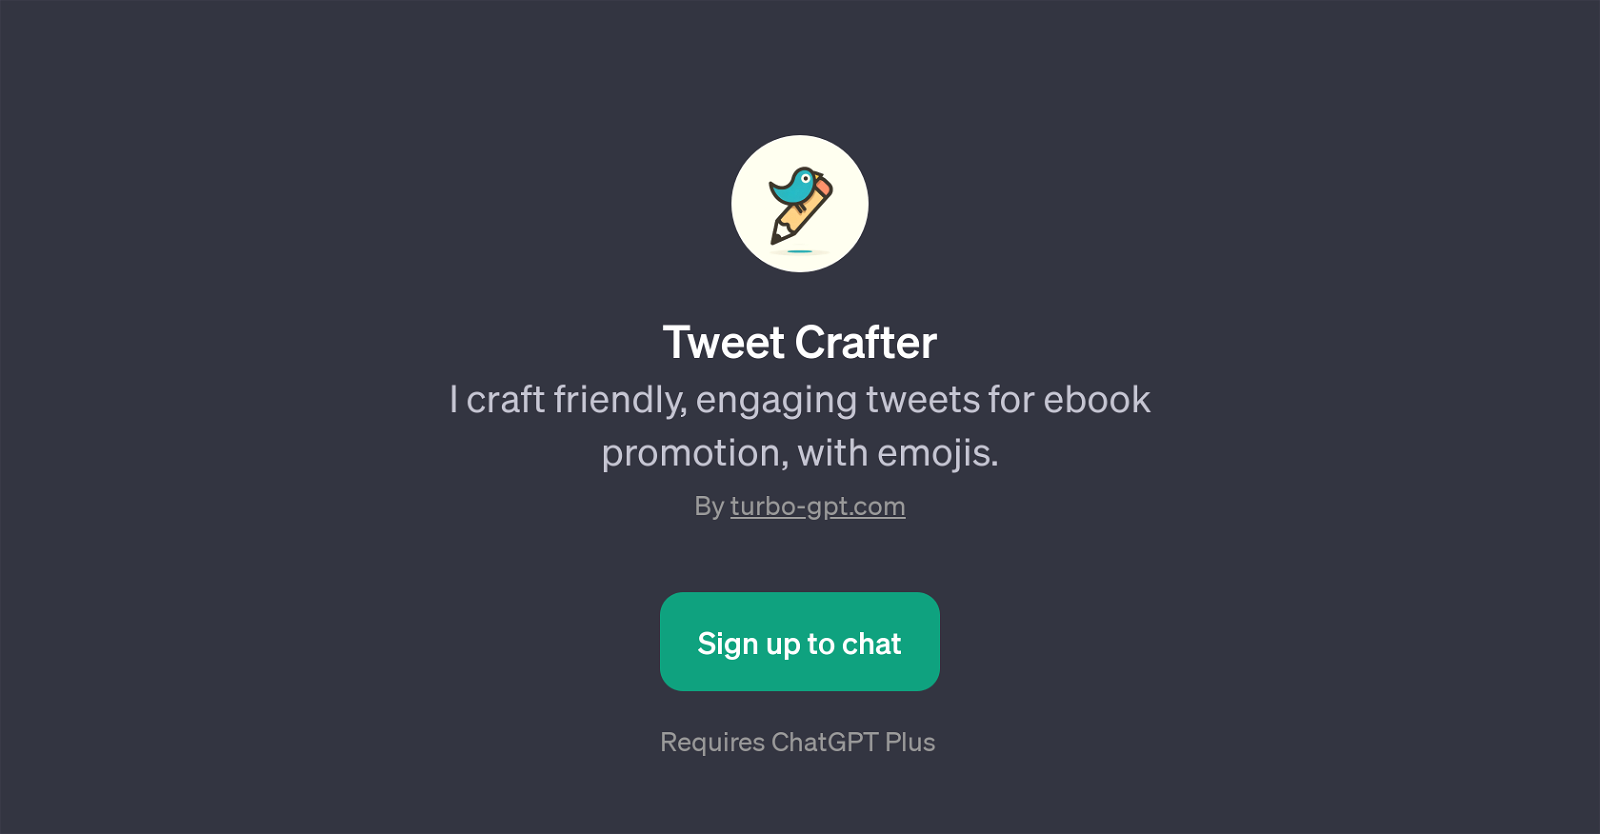 Tweet Crafter website